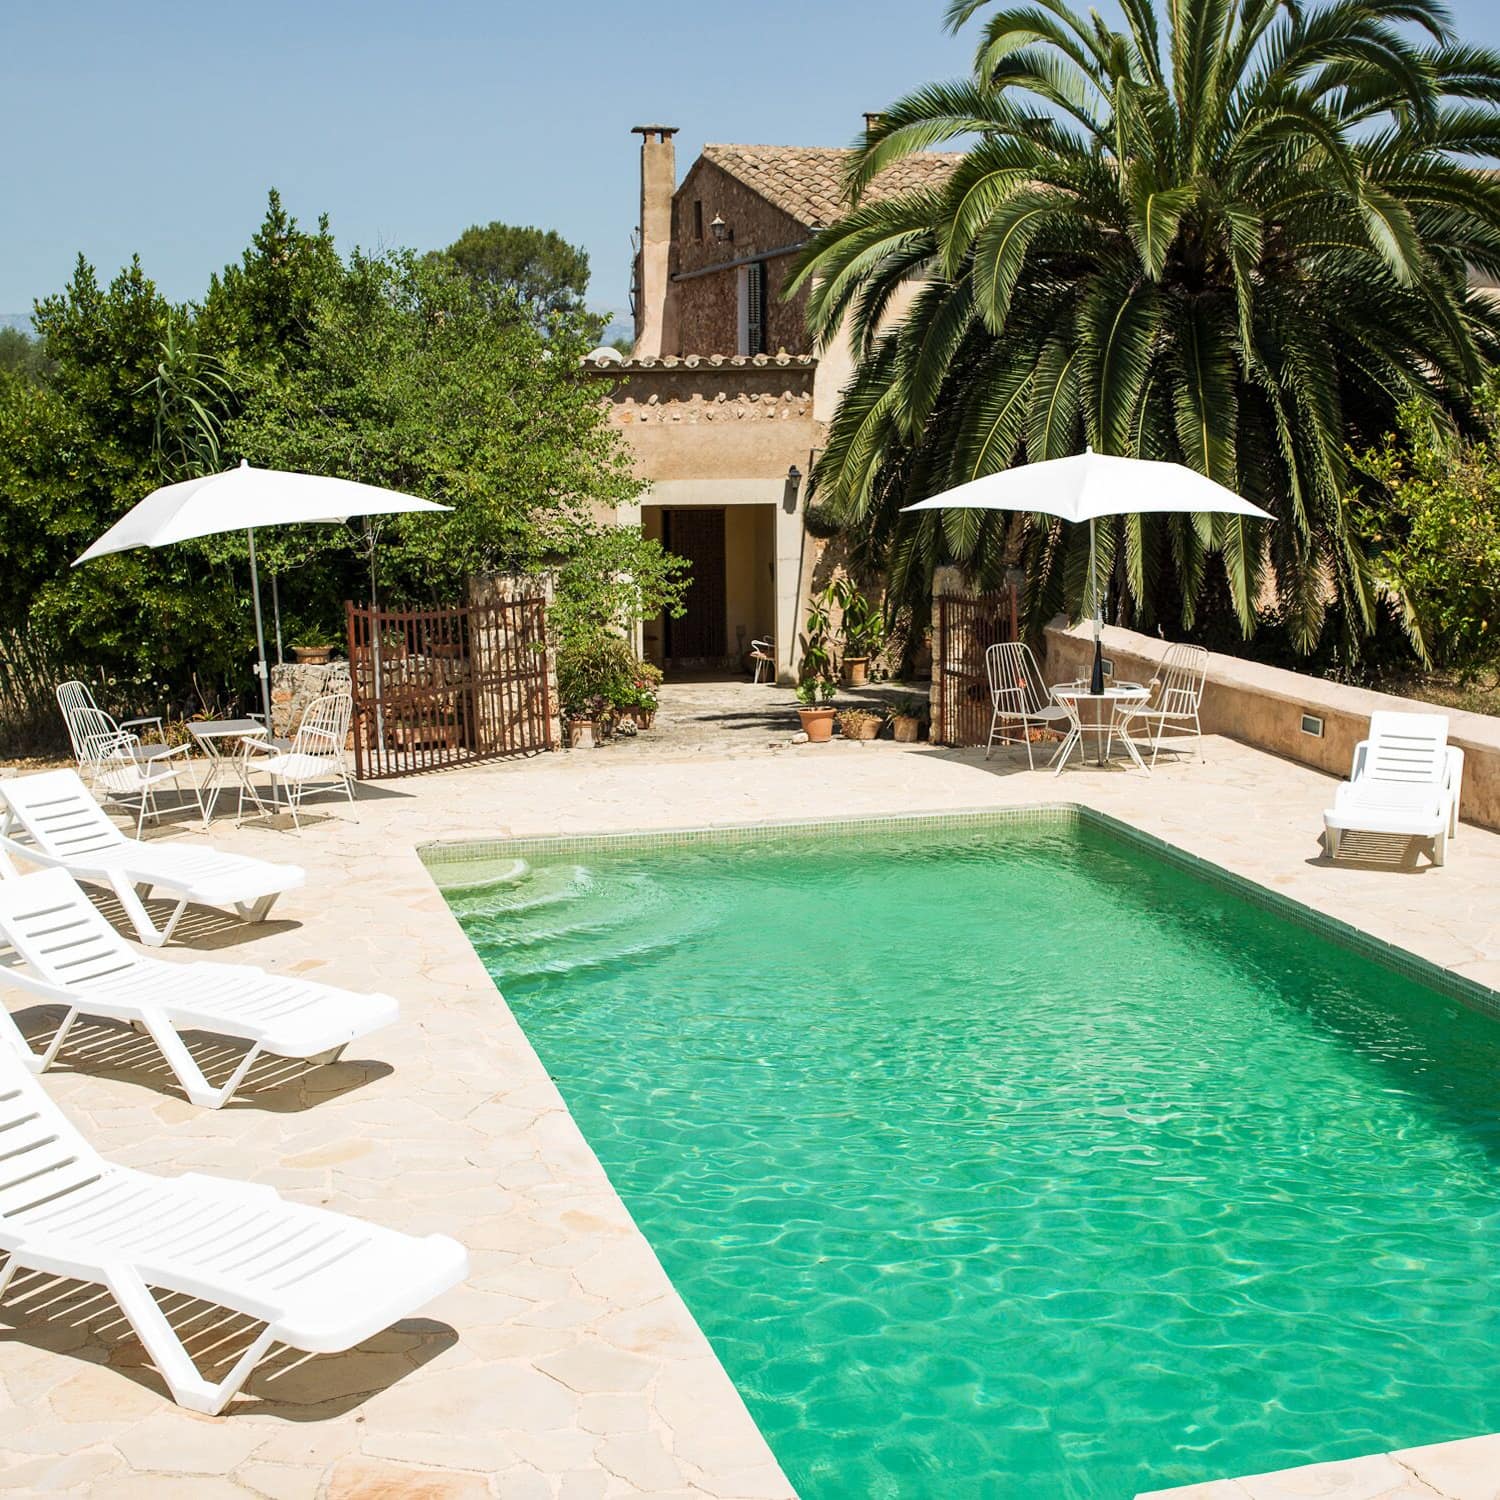 Gemütliches Ferienhaus auf Mallorca umgeben von Bäumen und Palmen mit großem Pool